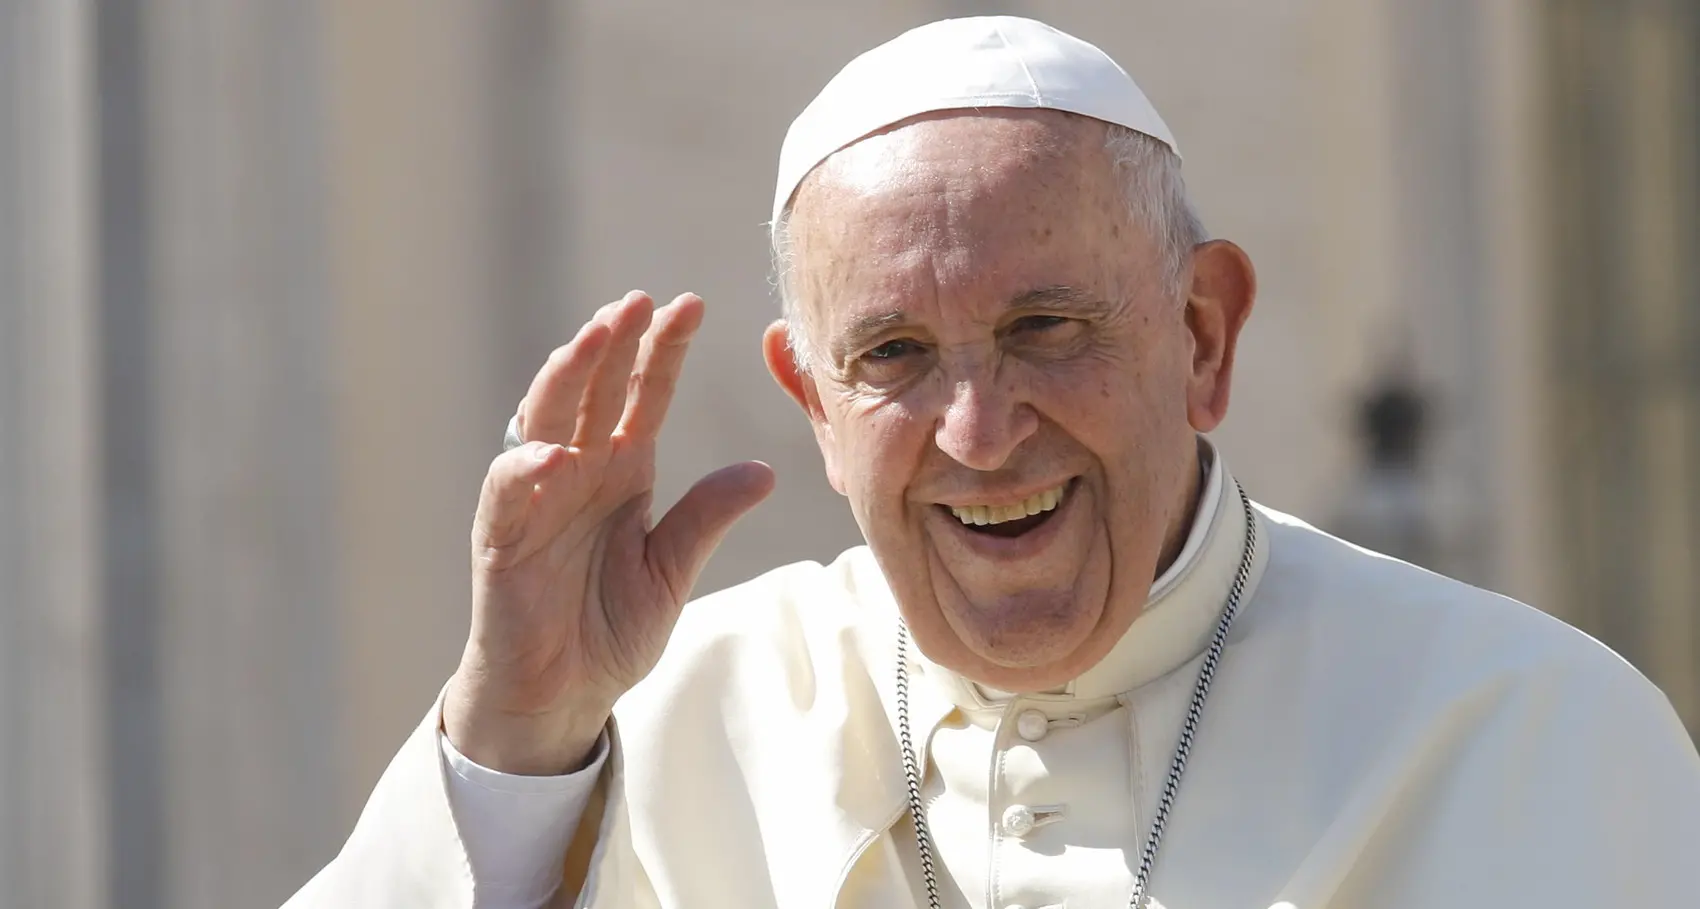 Filt: governo e compagnie ascoltino le parole del Papa